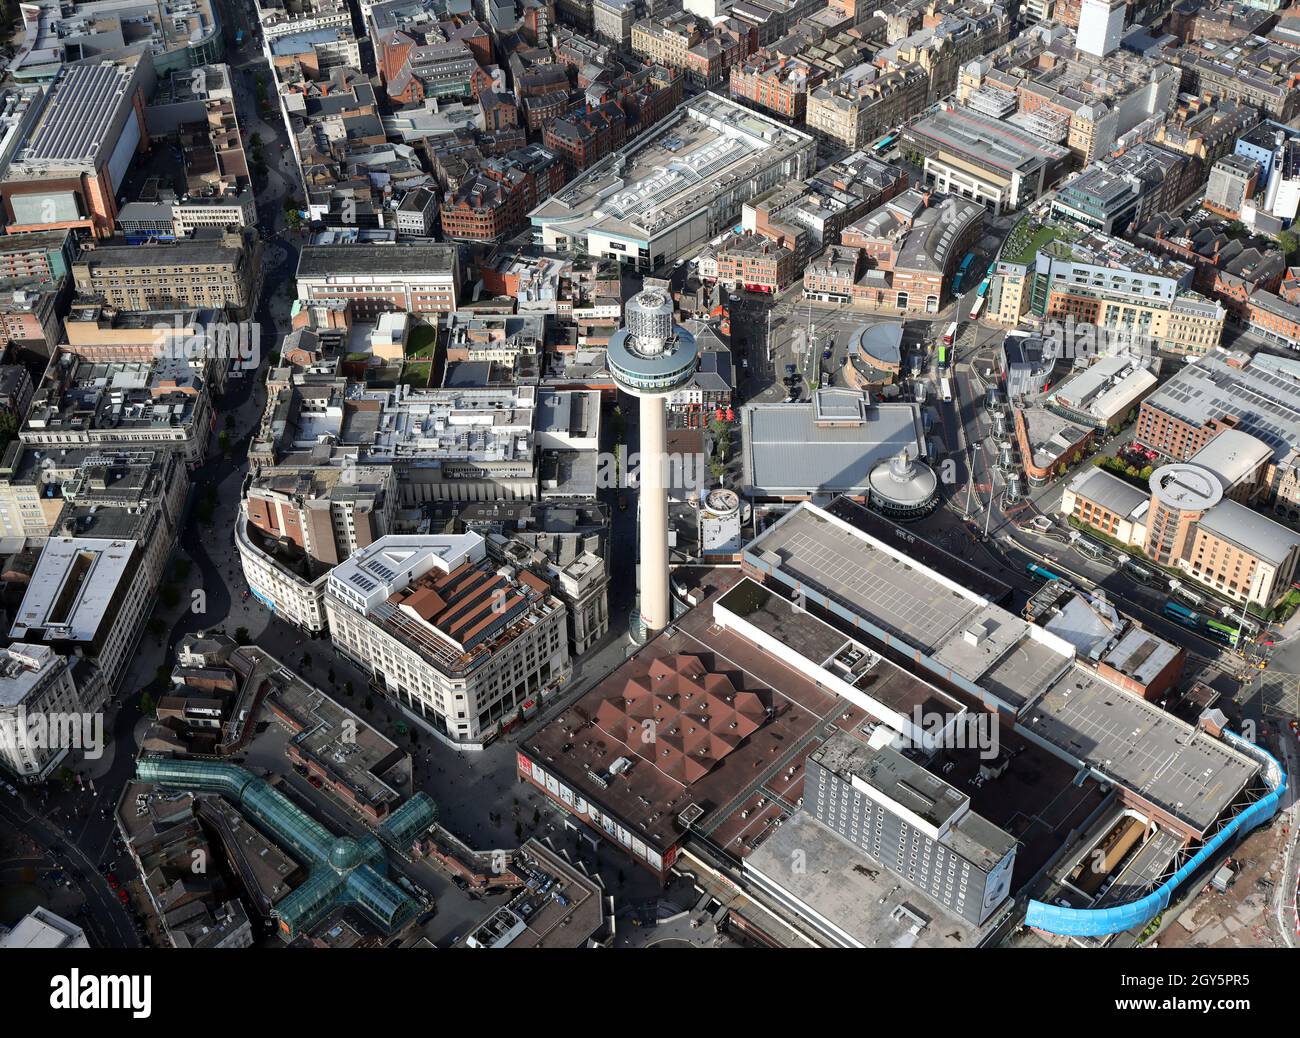 Vista aerea di Liverpool con la St Johns Beacon Viewing Gallery (radio City Tower) e il St Johns Shopping Centre prominenti in primo piano Foto Stock